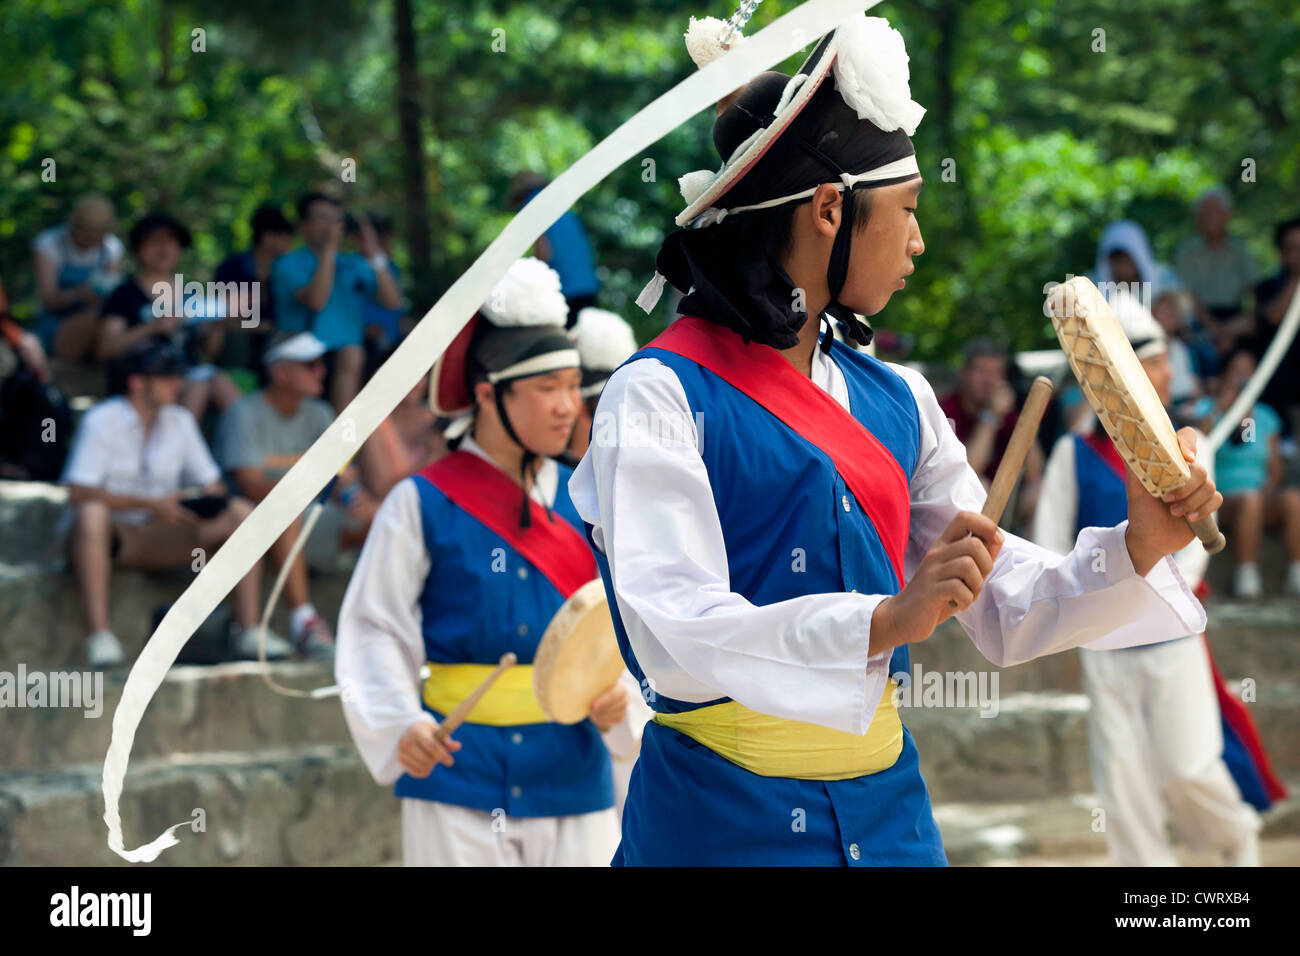 Les agriculteurs coréens danseurs virevoltant au ruban attaché à leur chapeau au Village folklorique coréen à Yongin, Corée. Banque D'Images